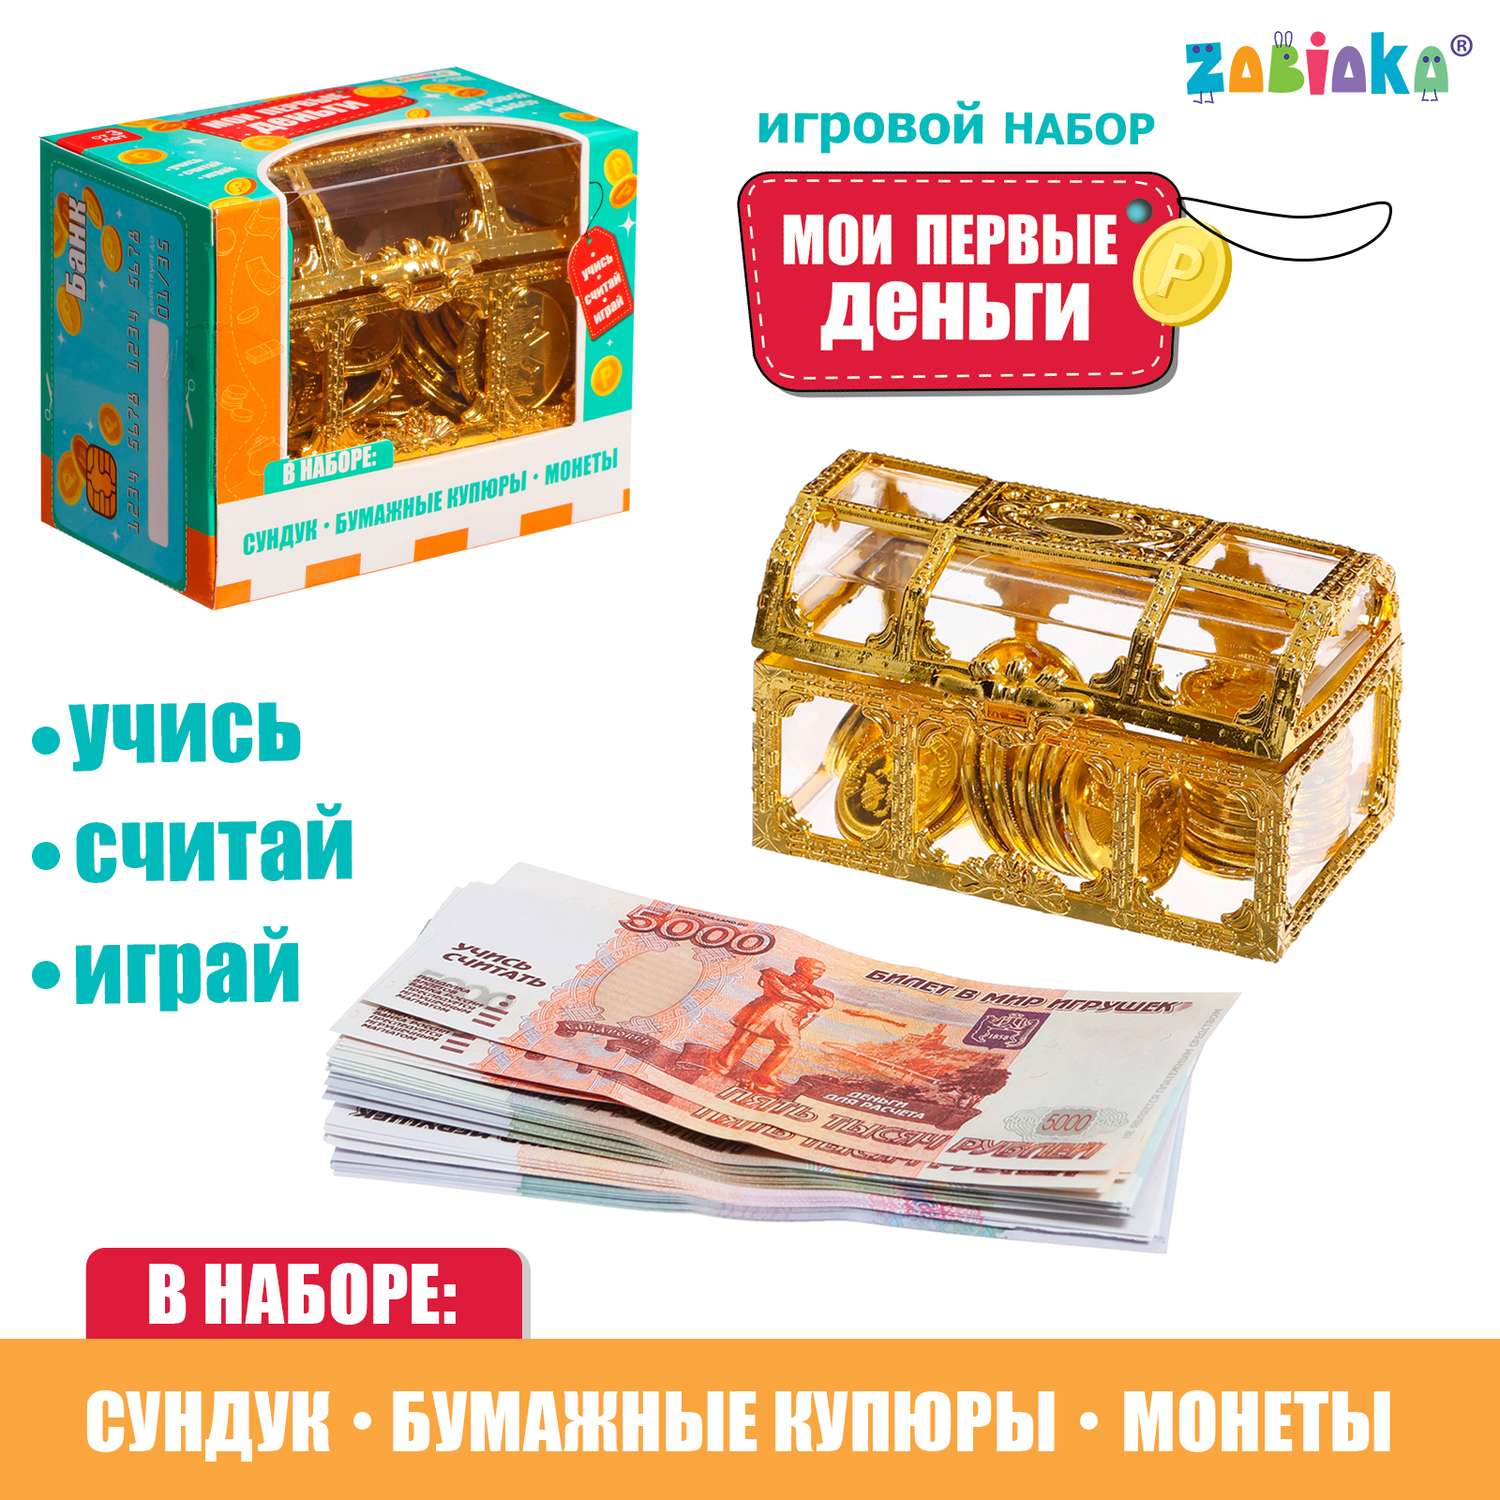 Игровой набор Zabiaka «Мои первые деньги» - фото 1